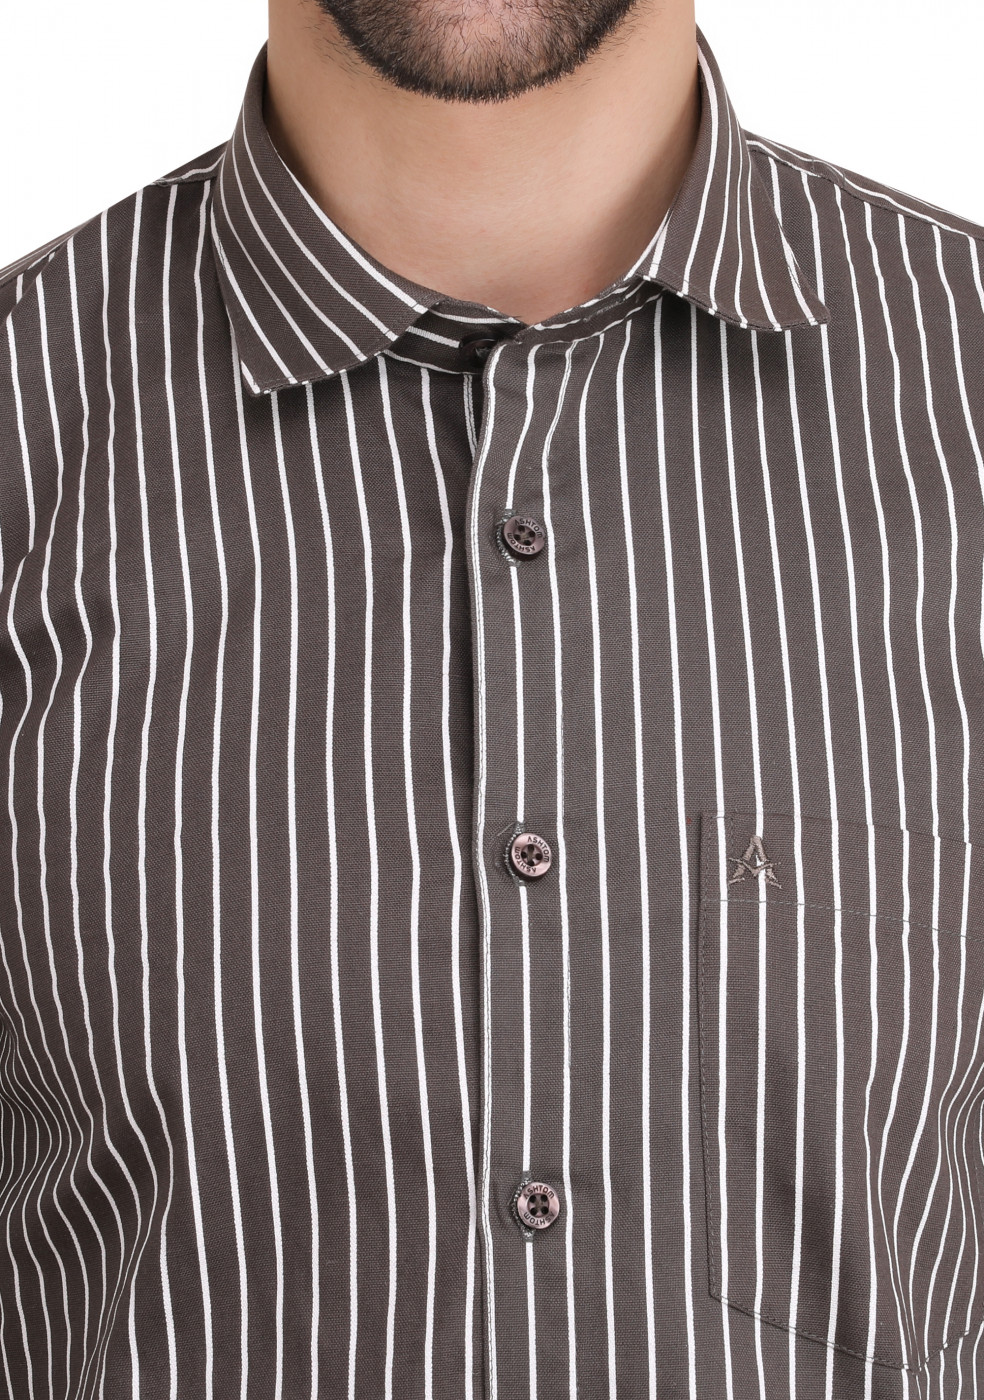 Gray Formal Lining Shirt For Men